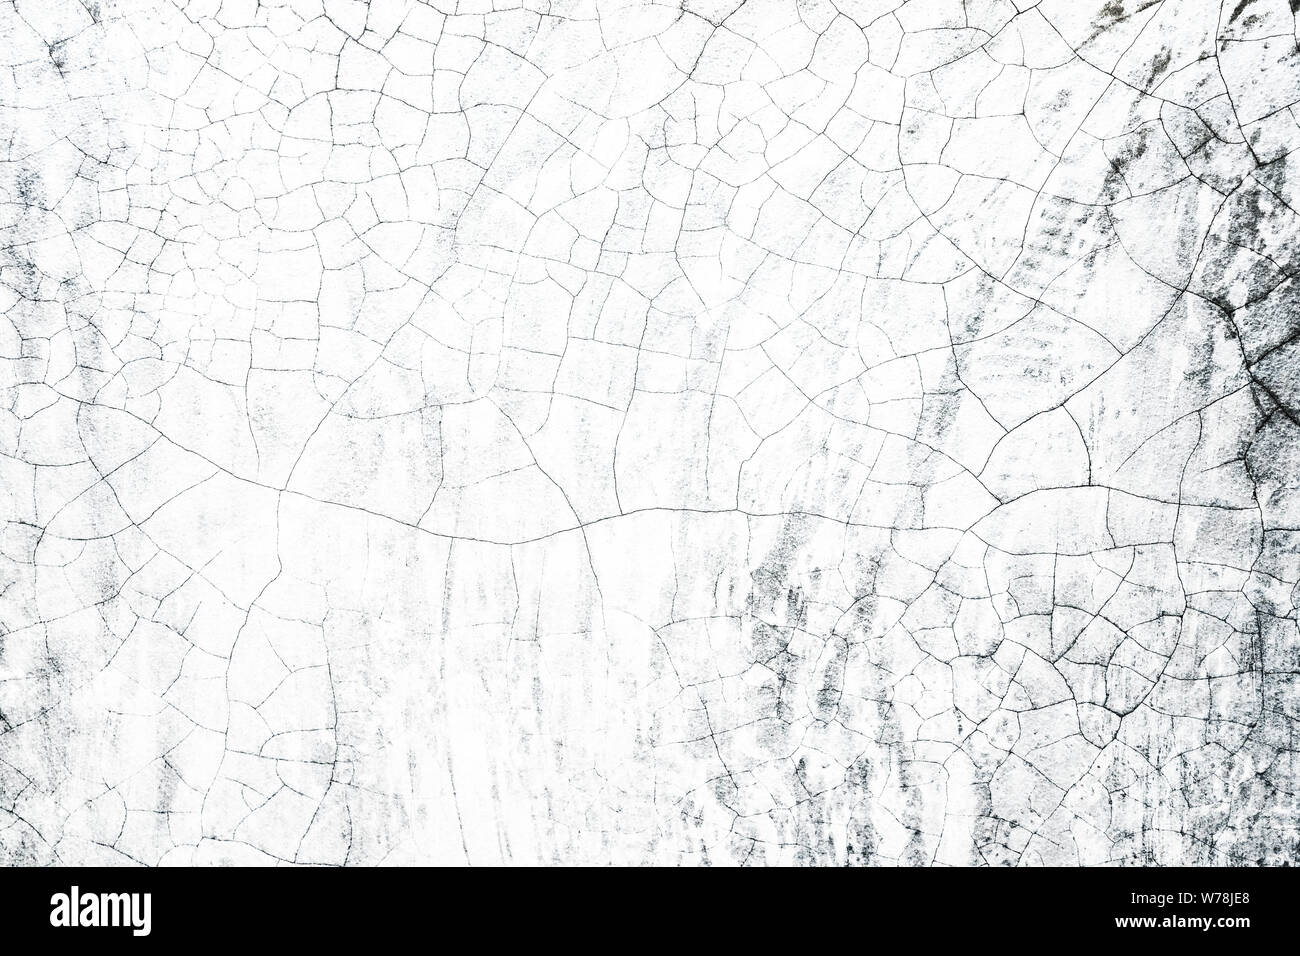 Grunge calcestruzzo intonaco cementizio design verniciatura texture di sfondo naturale parete di cemento texture dettaglio interni design texture per progetto creativo Foto Stock